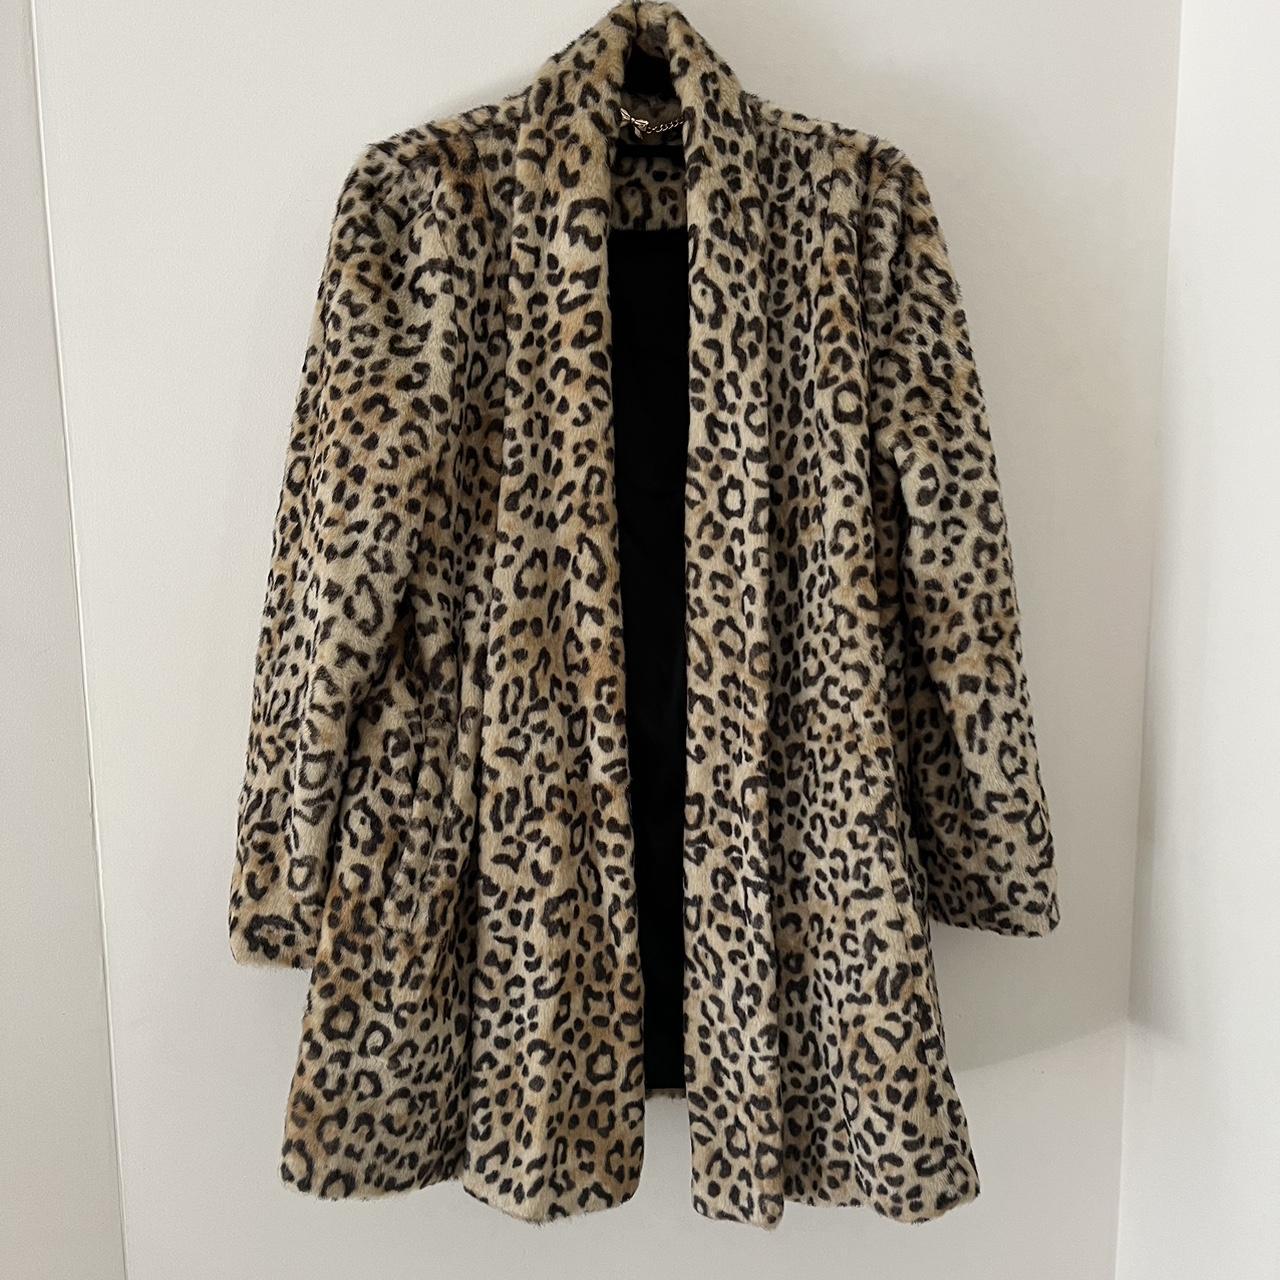 Faux fur leopard print winter coat. Super warm and... - Depop